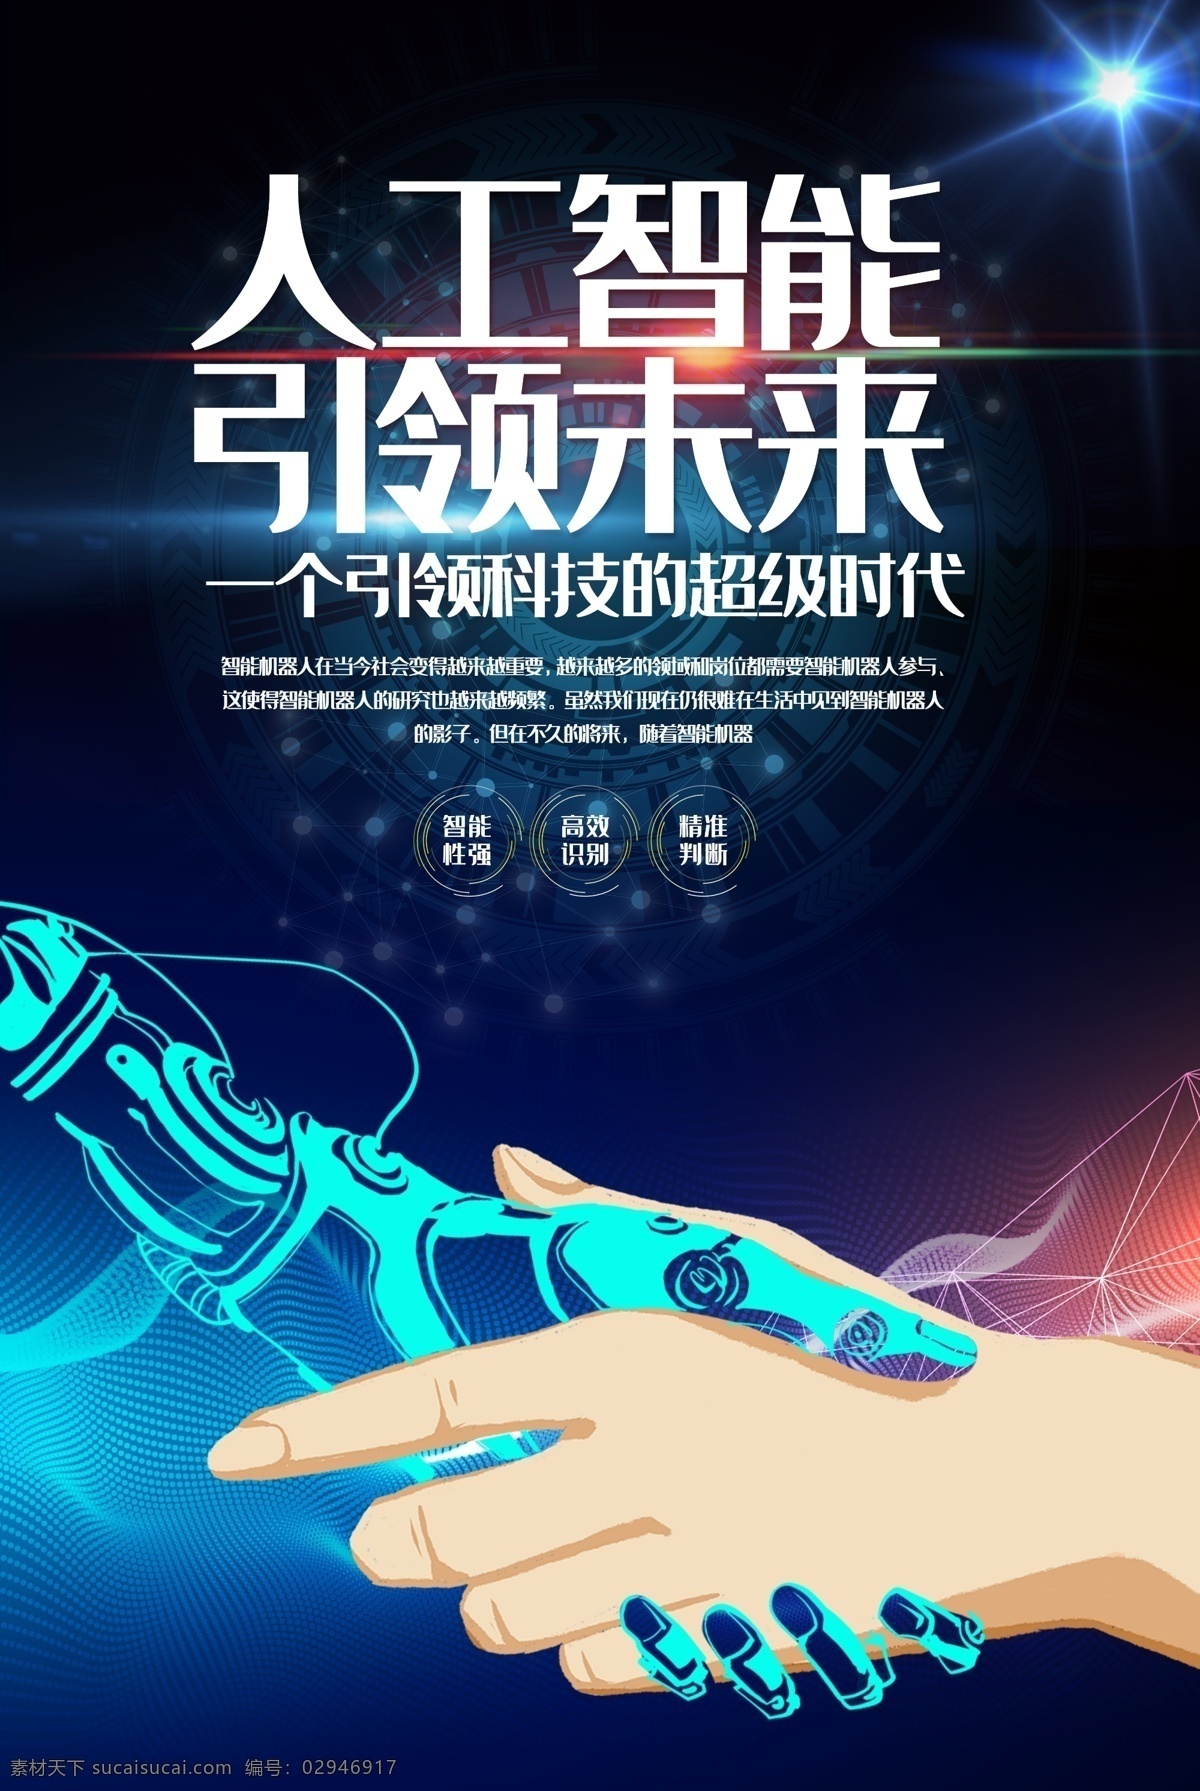 人工智能 引领 未来 科技 中国芯 芯片 蓝色 蓝色背景 科技背景 科技展板 蓝色科技 蓝色展板 科技展板背景 蓝色背景展板